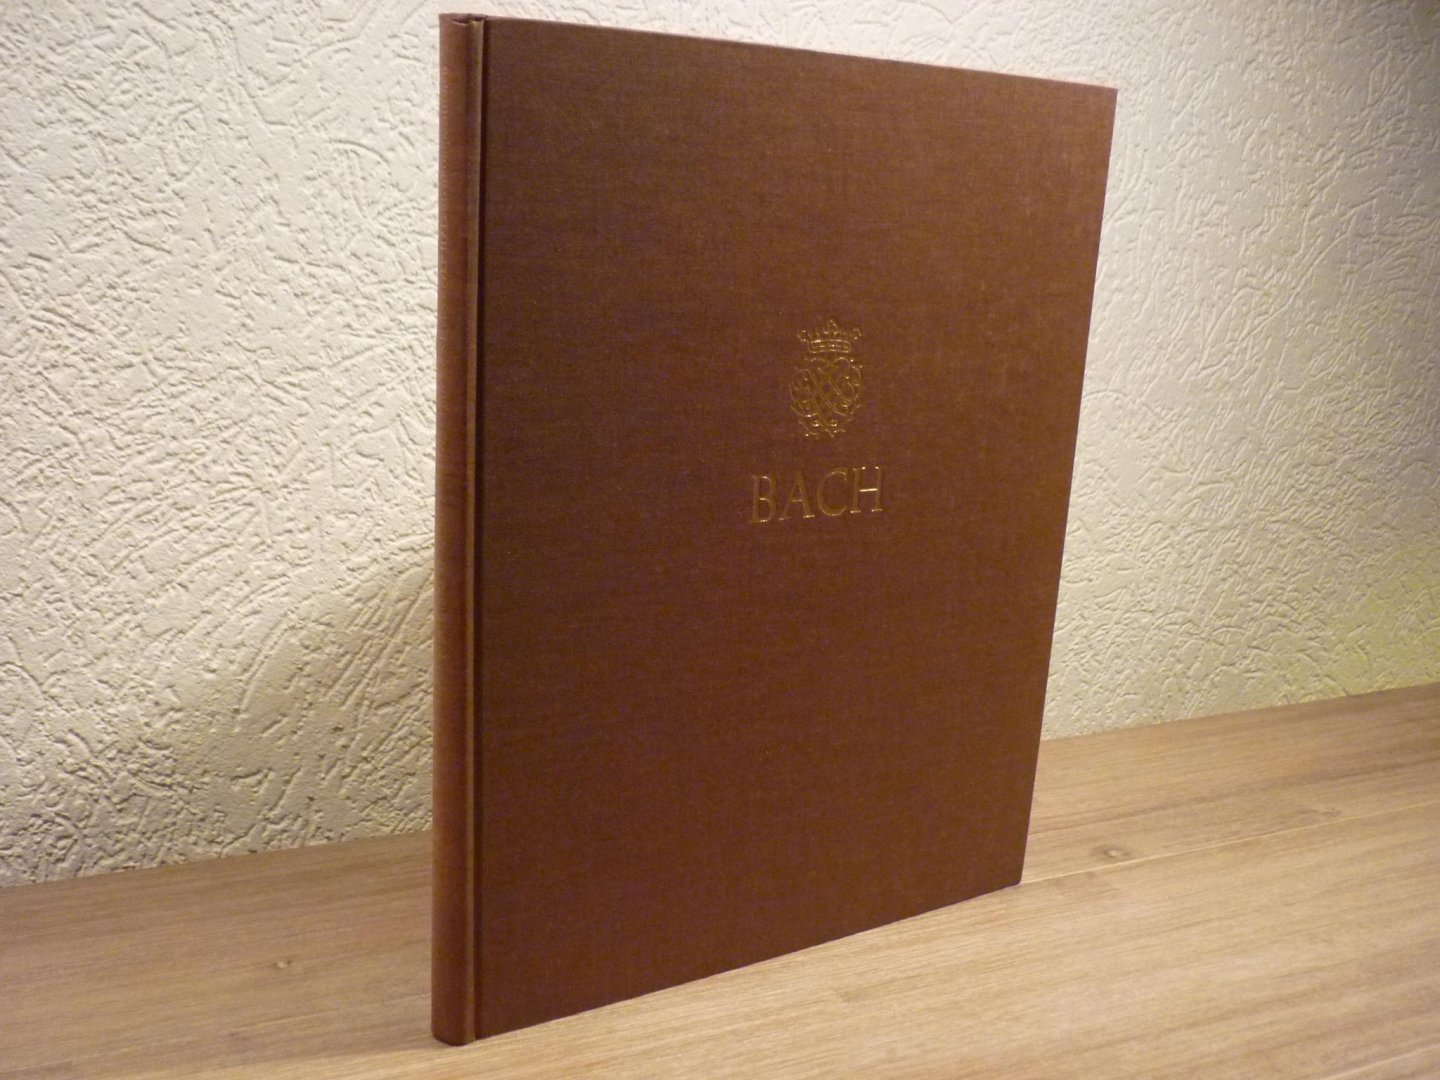 Bach; J. S. (1685-1750) - Einzeln überlieferte Klavierwerke II / Kompositionen für Lauteninstrumente; Klavier- und Lautenwerke, Band 10; Neue Ausgabe sämtlicher Werke